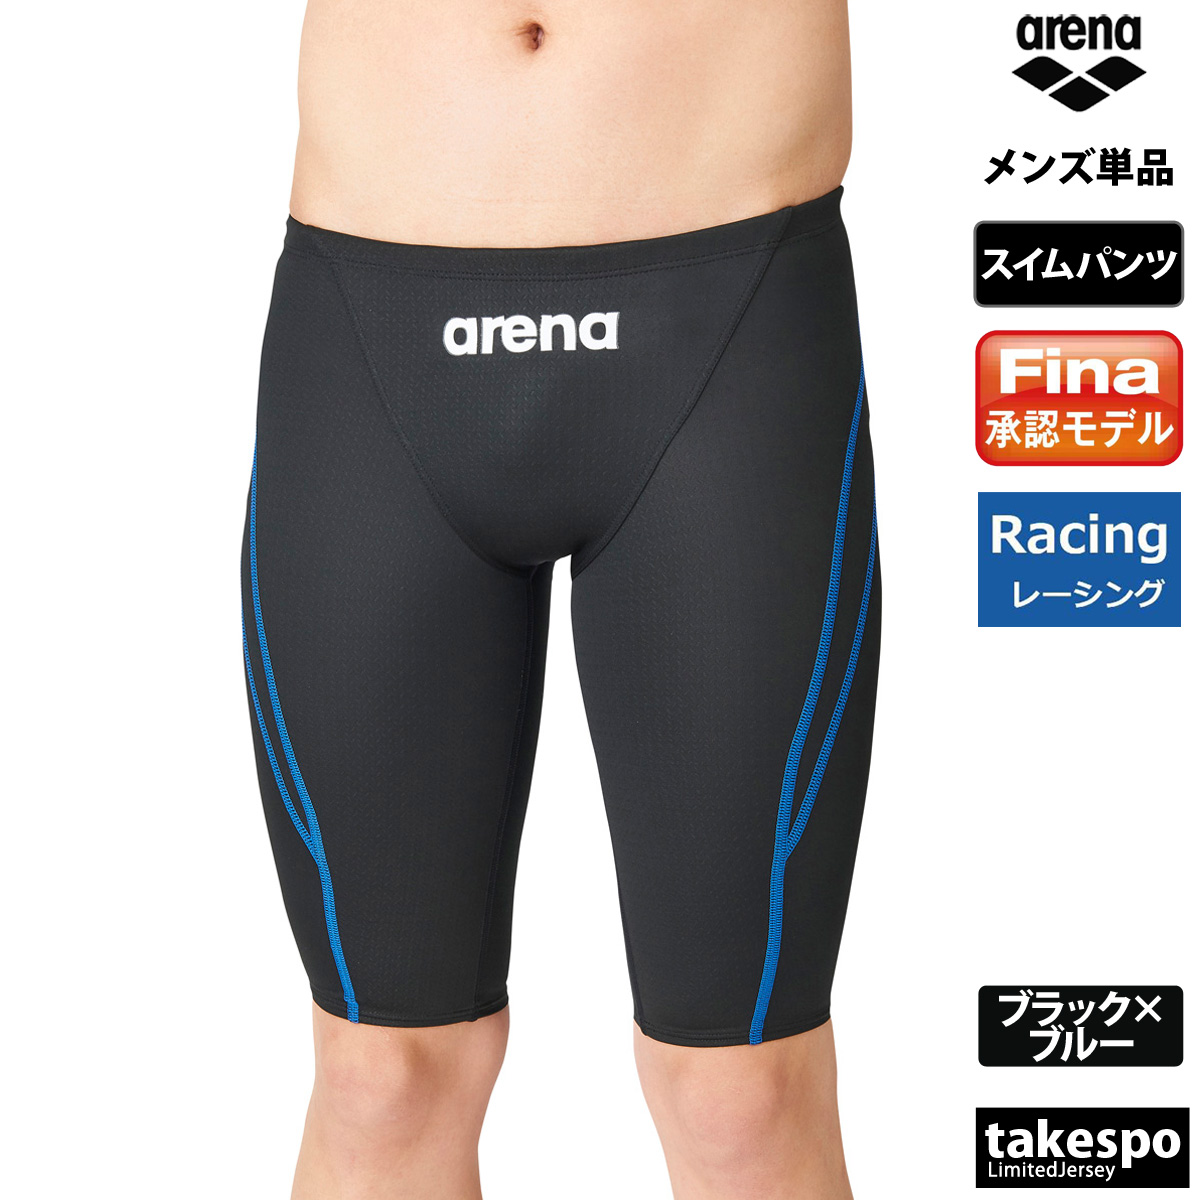  Arena плавание брюки мужской внизу arena [FINA одобрение ].. купальный костюм половина леггинсы плавание ARN1022M бесплатная доставка новый продукт 